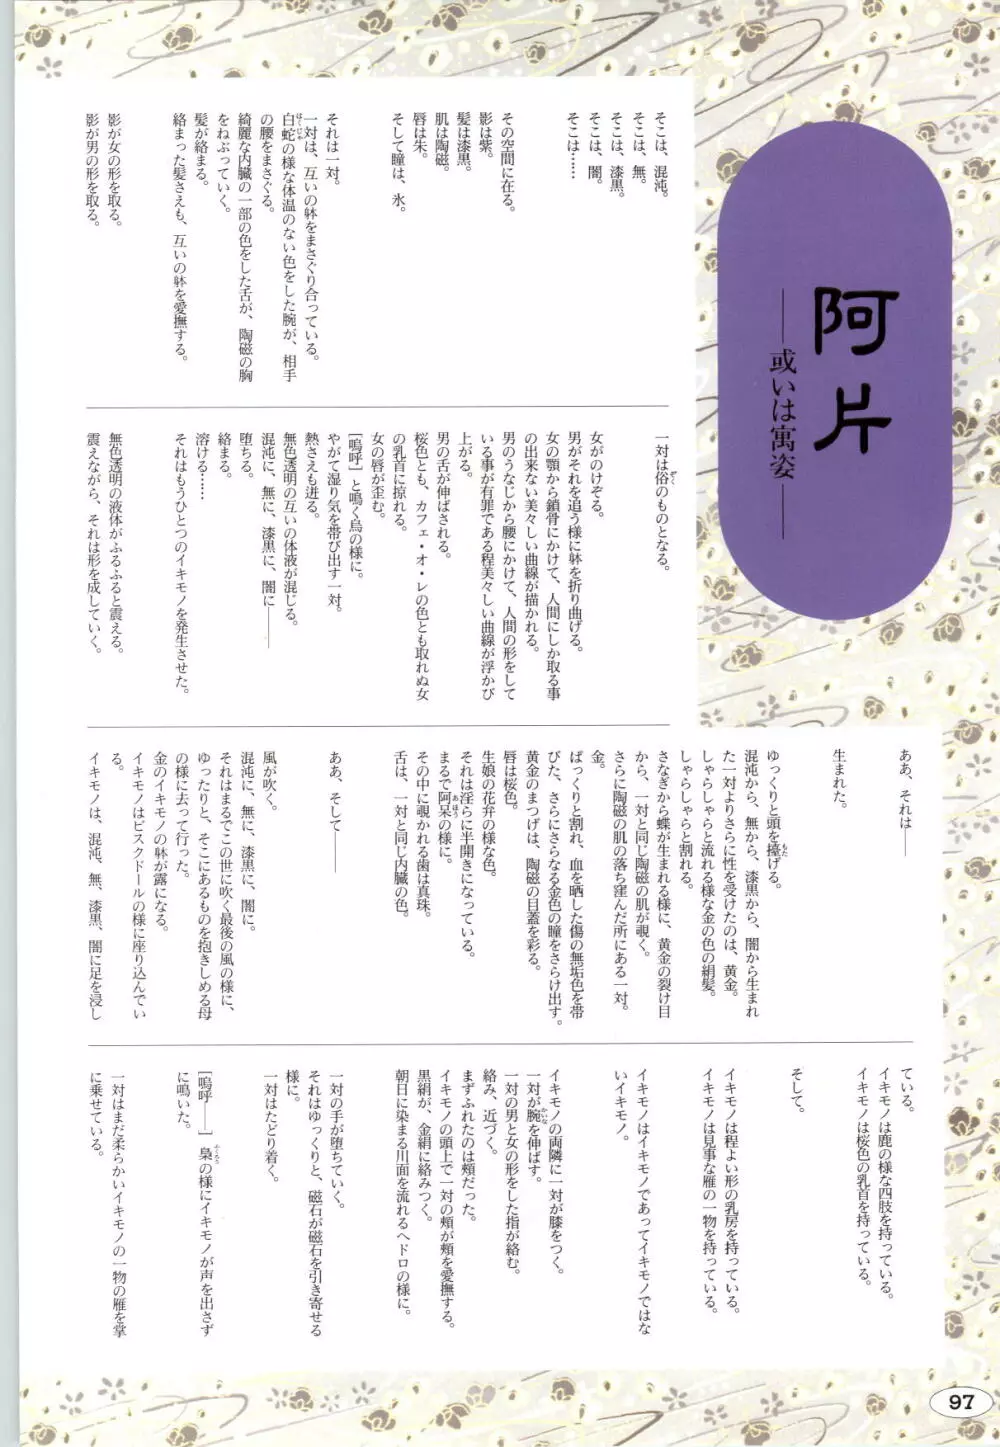 [ALICE SOFT][950707] 夢幻泡影 (一般画集) [アリスソフト] 夢幻泡影 原画&設定資料集 100ページ